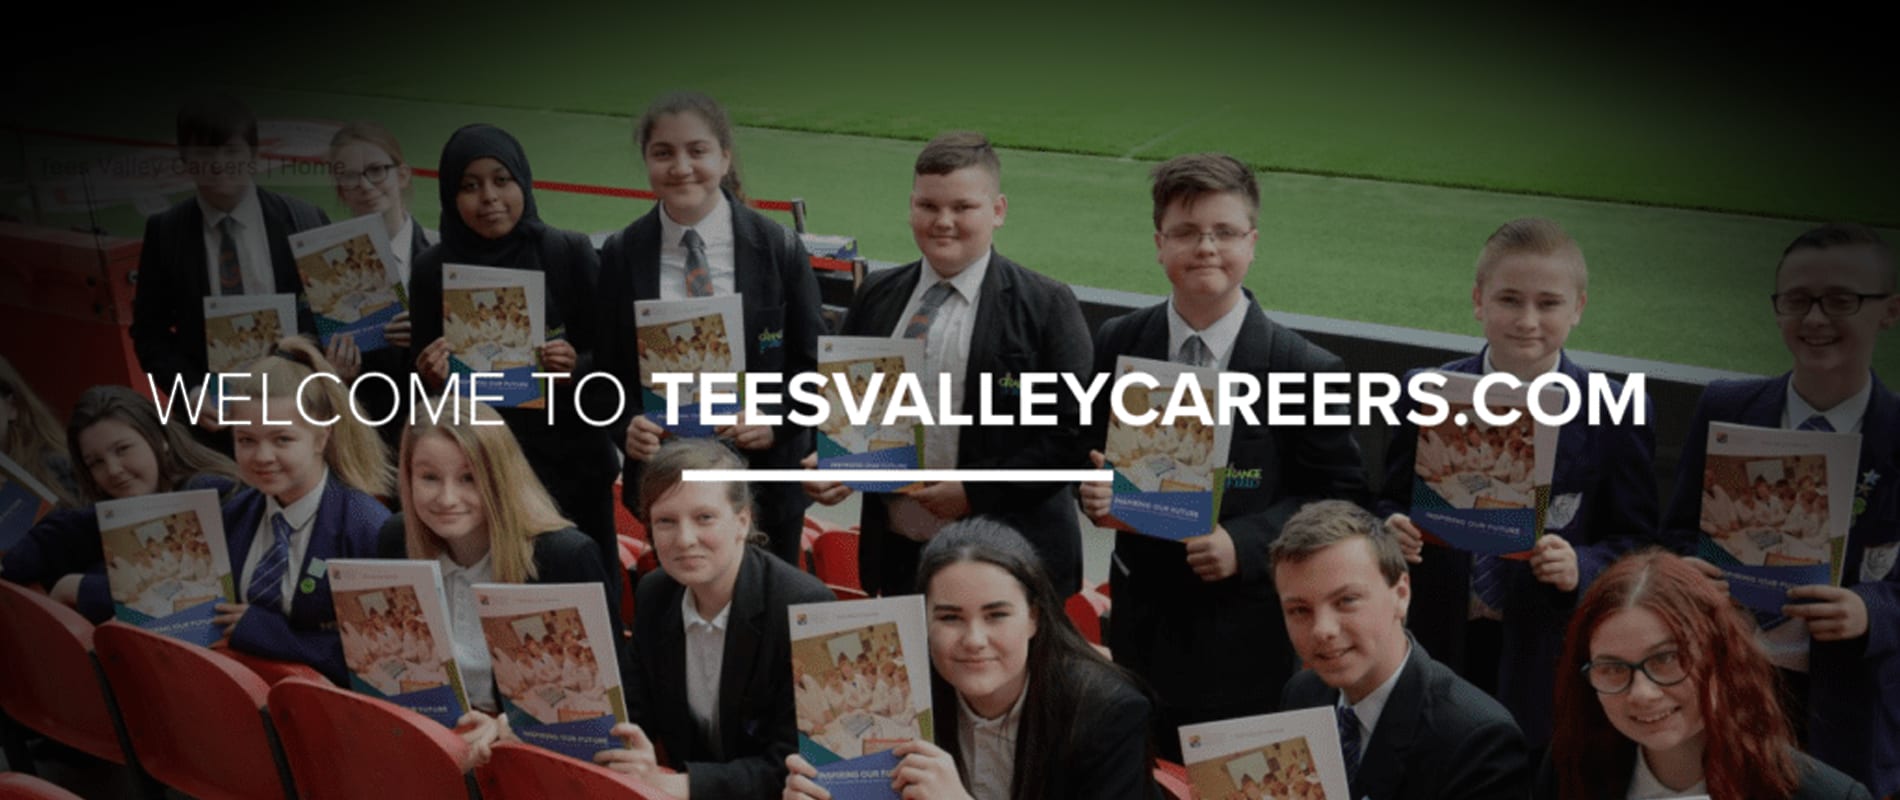 School students holding Tees Valley Careers brochures